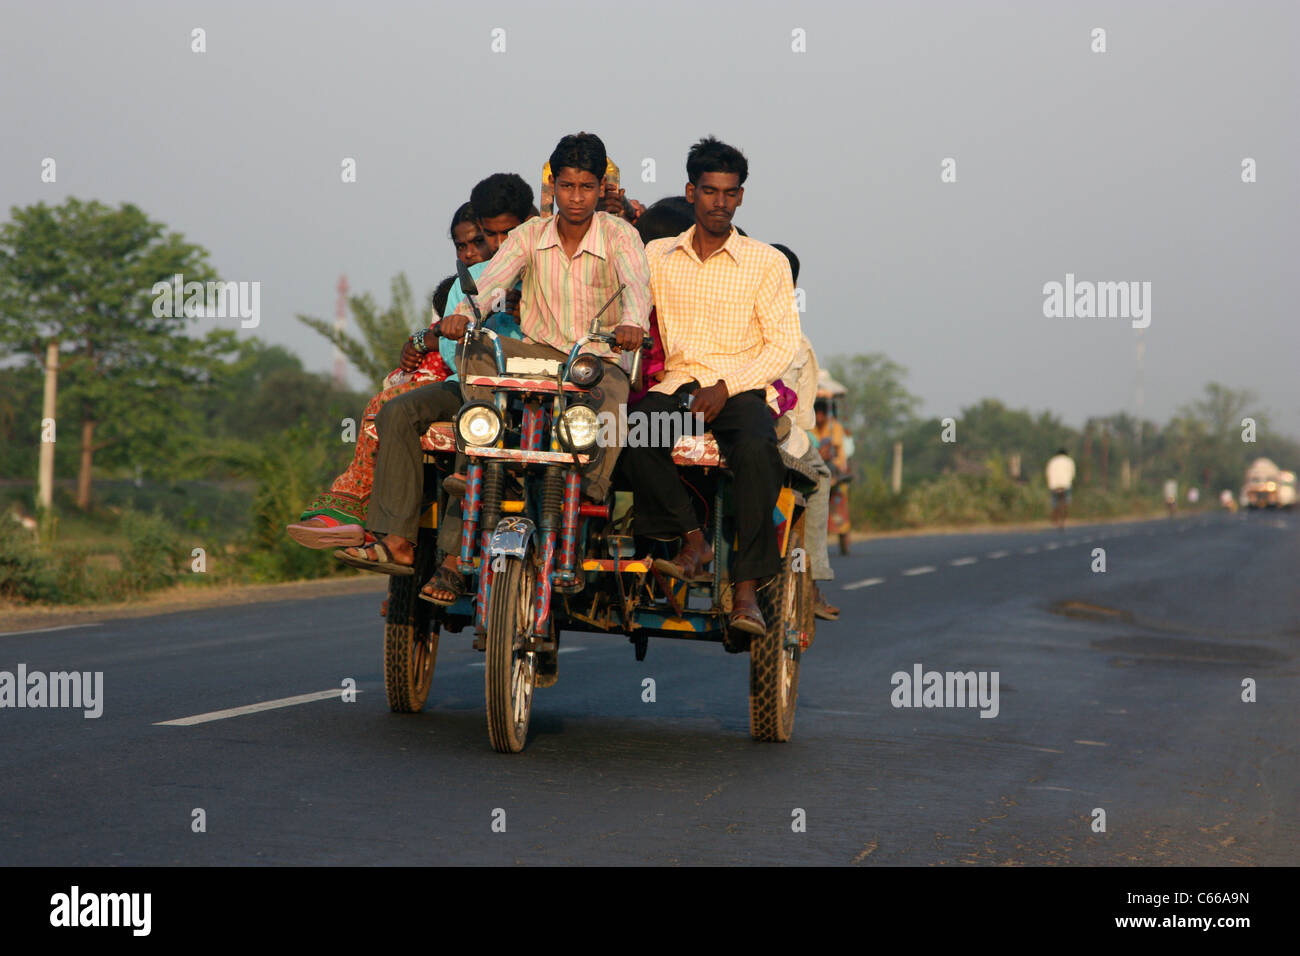 Indios muy cargado triciclo rickshaw motor transportando pasajeros hasta una carretera al atardecer en Bengala Occidental, India Foto de stock